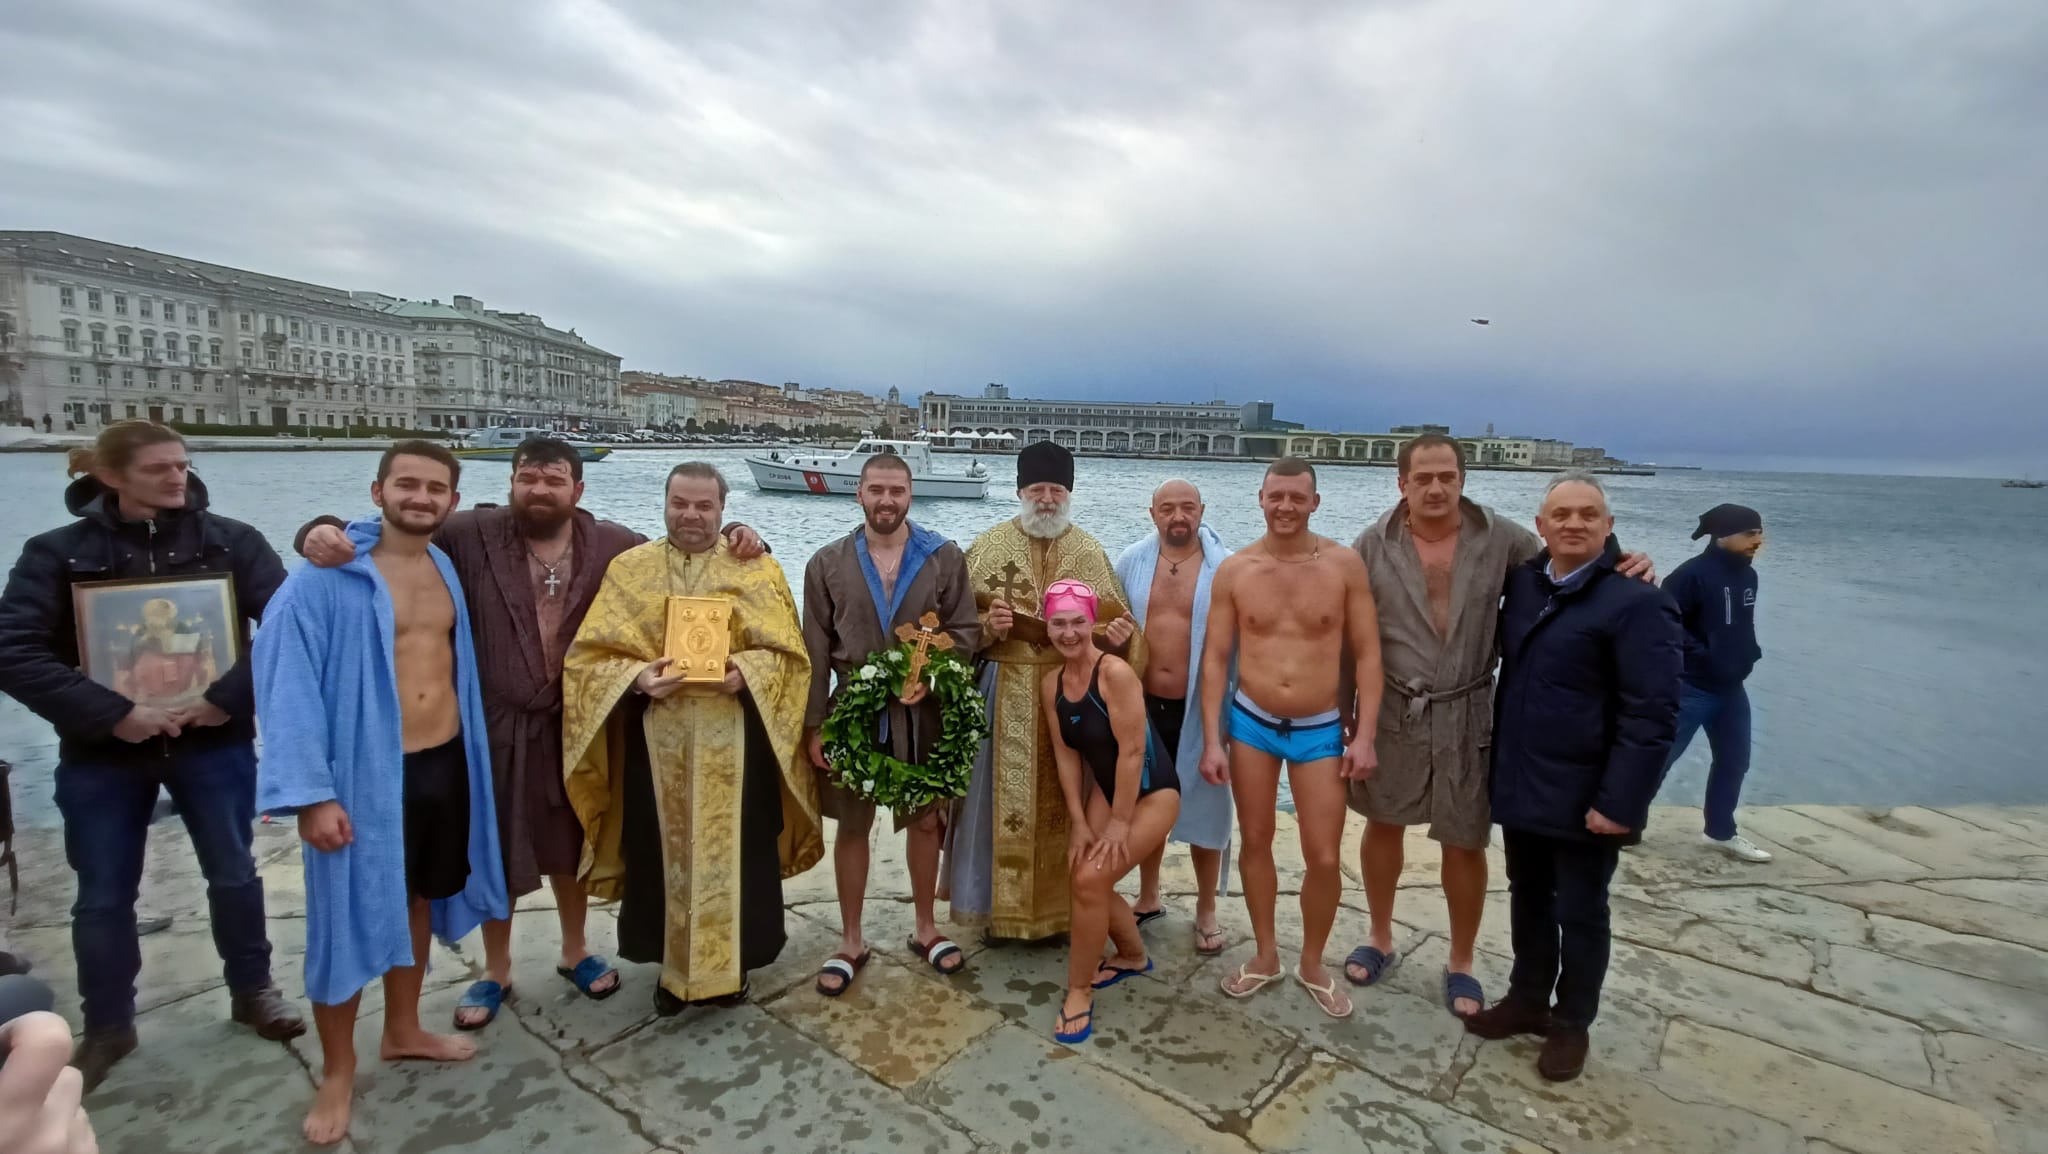 Epifania ortodossa: processione e benedizione delle acque dal Molo Audace Image